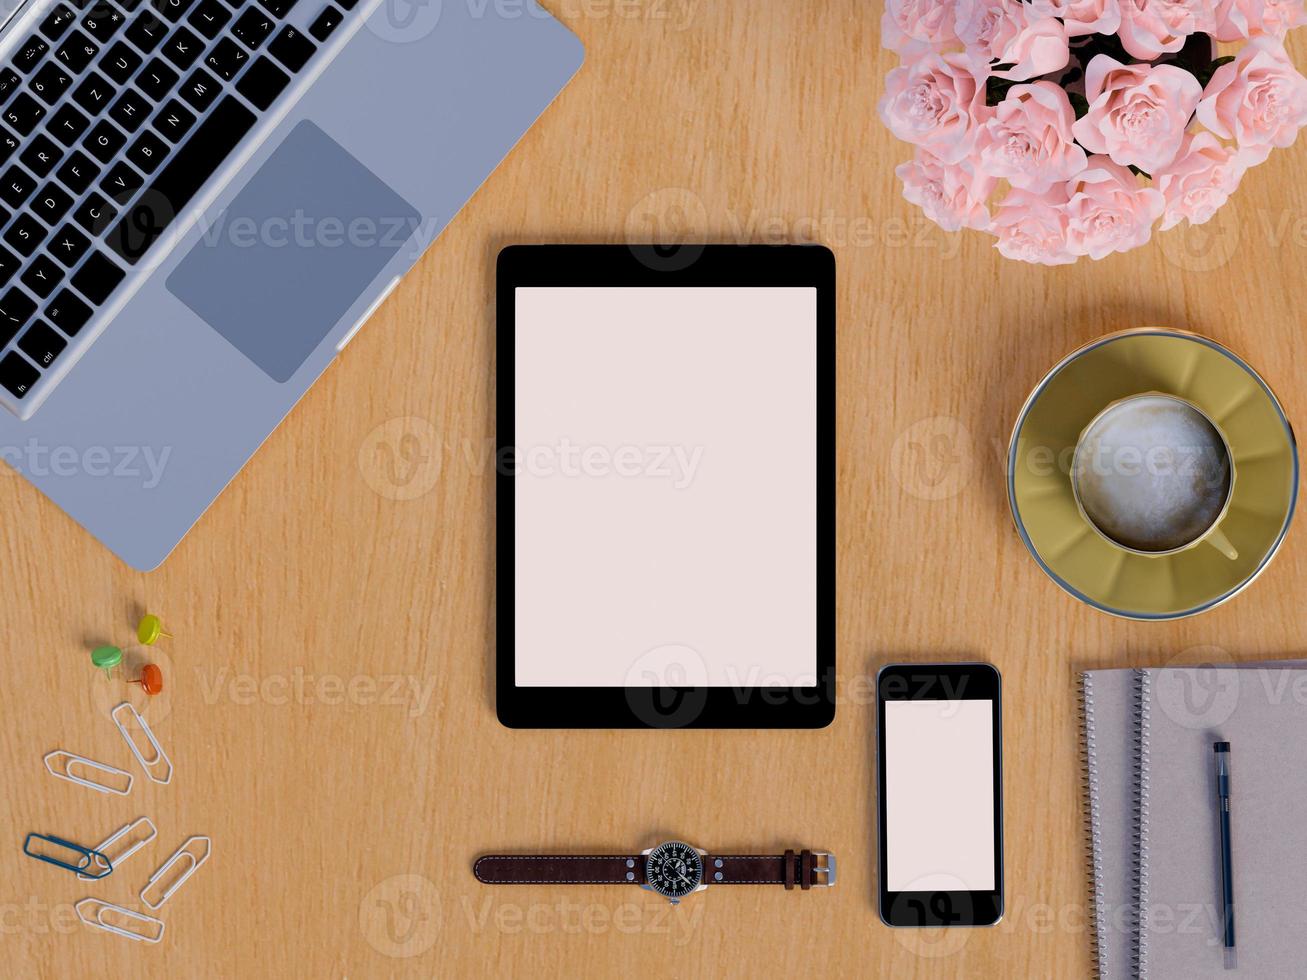 bespotten tablet en smartphone op de werkruimte van het tafelblad foto